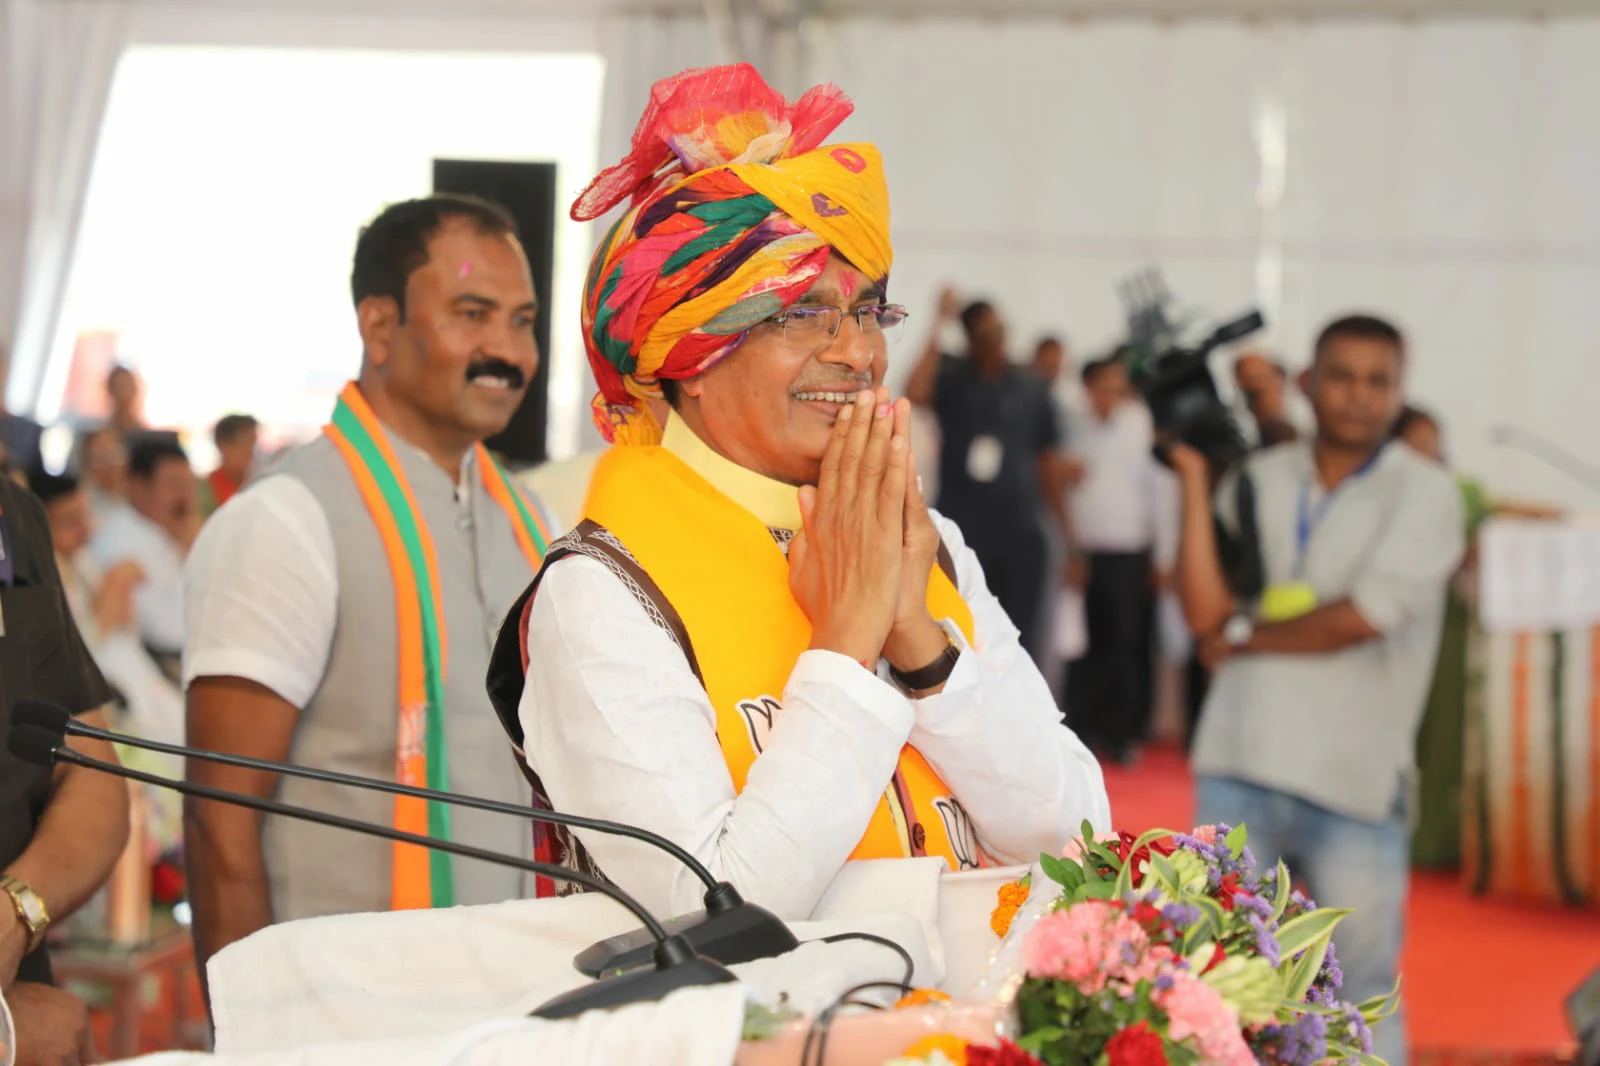 मुख्यमंत्री शिवराज सिंह चौहान झाबुआ में महिला सम्मेलन में हुए शामिल, भगोरिया नृत्य और पुष्प-वर्षा कर मुख्यमंत्री का किया स्वागत